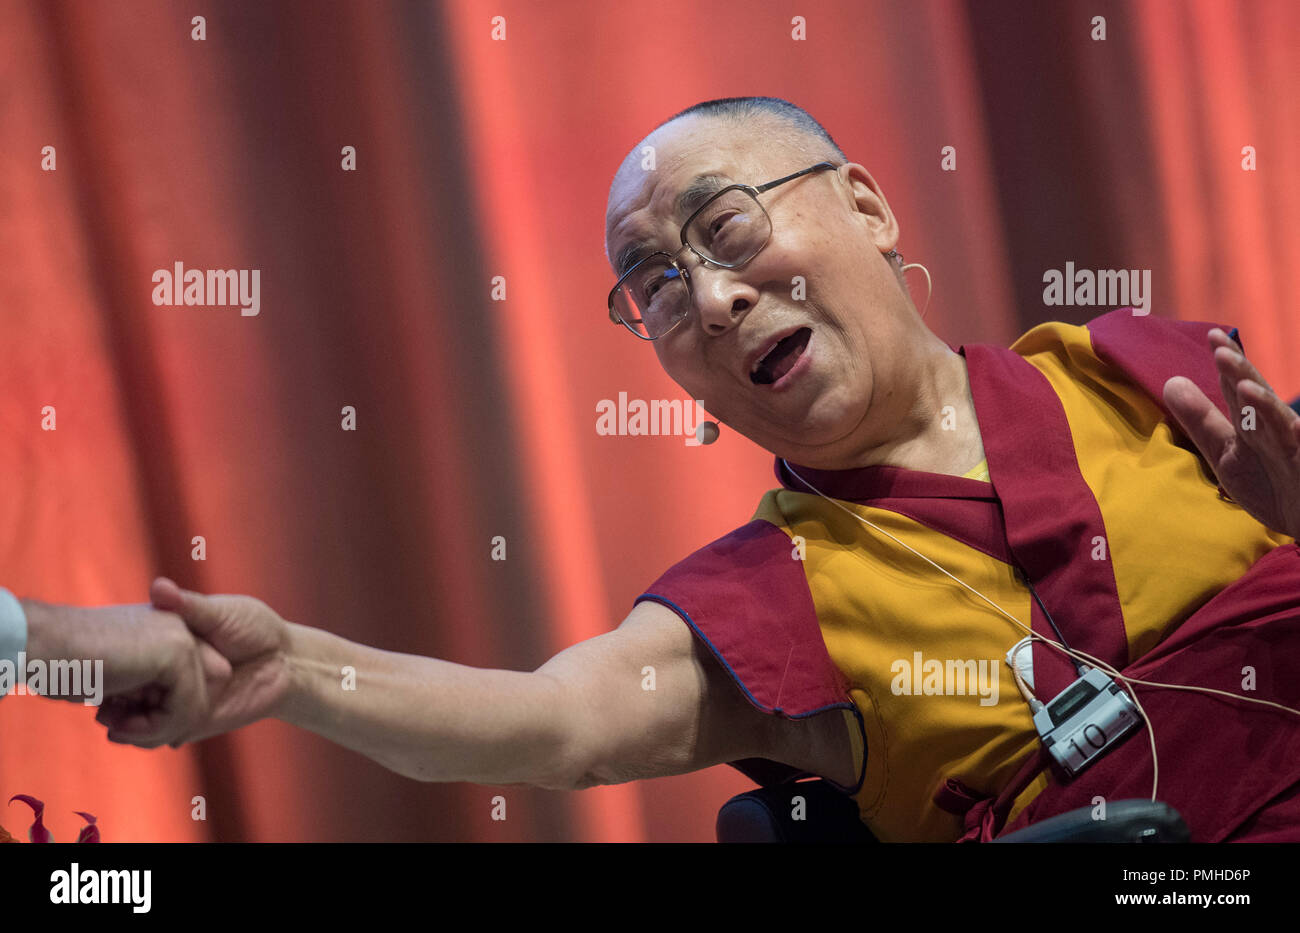 Darmstadt, Hesse, Alemania. 19 Sep, 2018. El Dalai Lama se sacude la mano de Lech Walesa en un simposio sobre "la no violencia es el camino". El líder espiritual de los tibetanos es de Hesse para una visita de dos días. Crédito: Boris Roessler/dpa/Alamy Live News Foto de stock